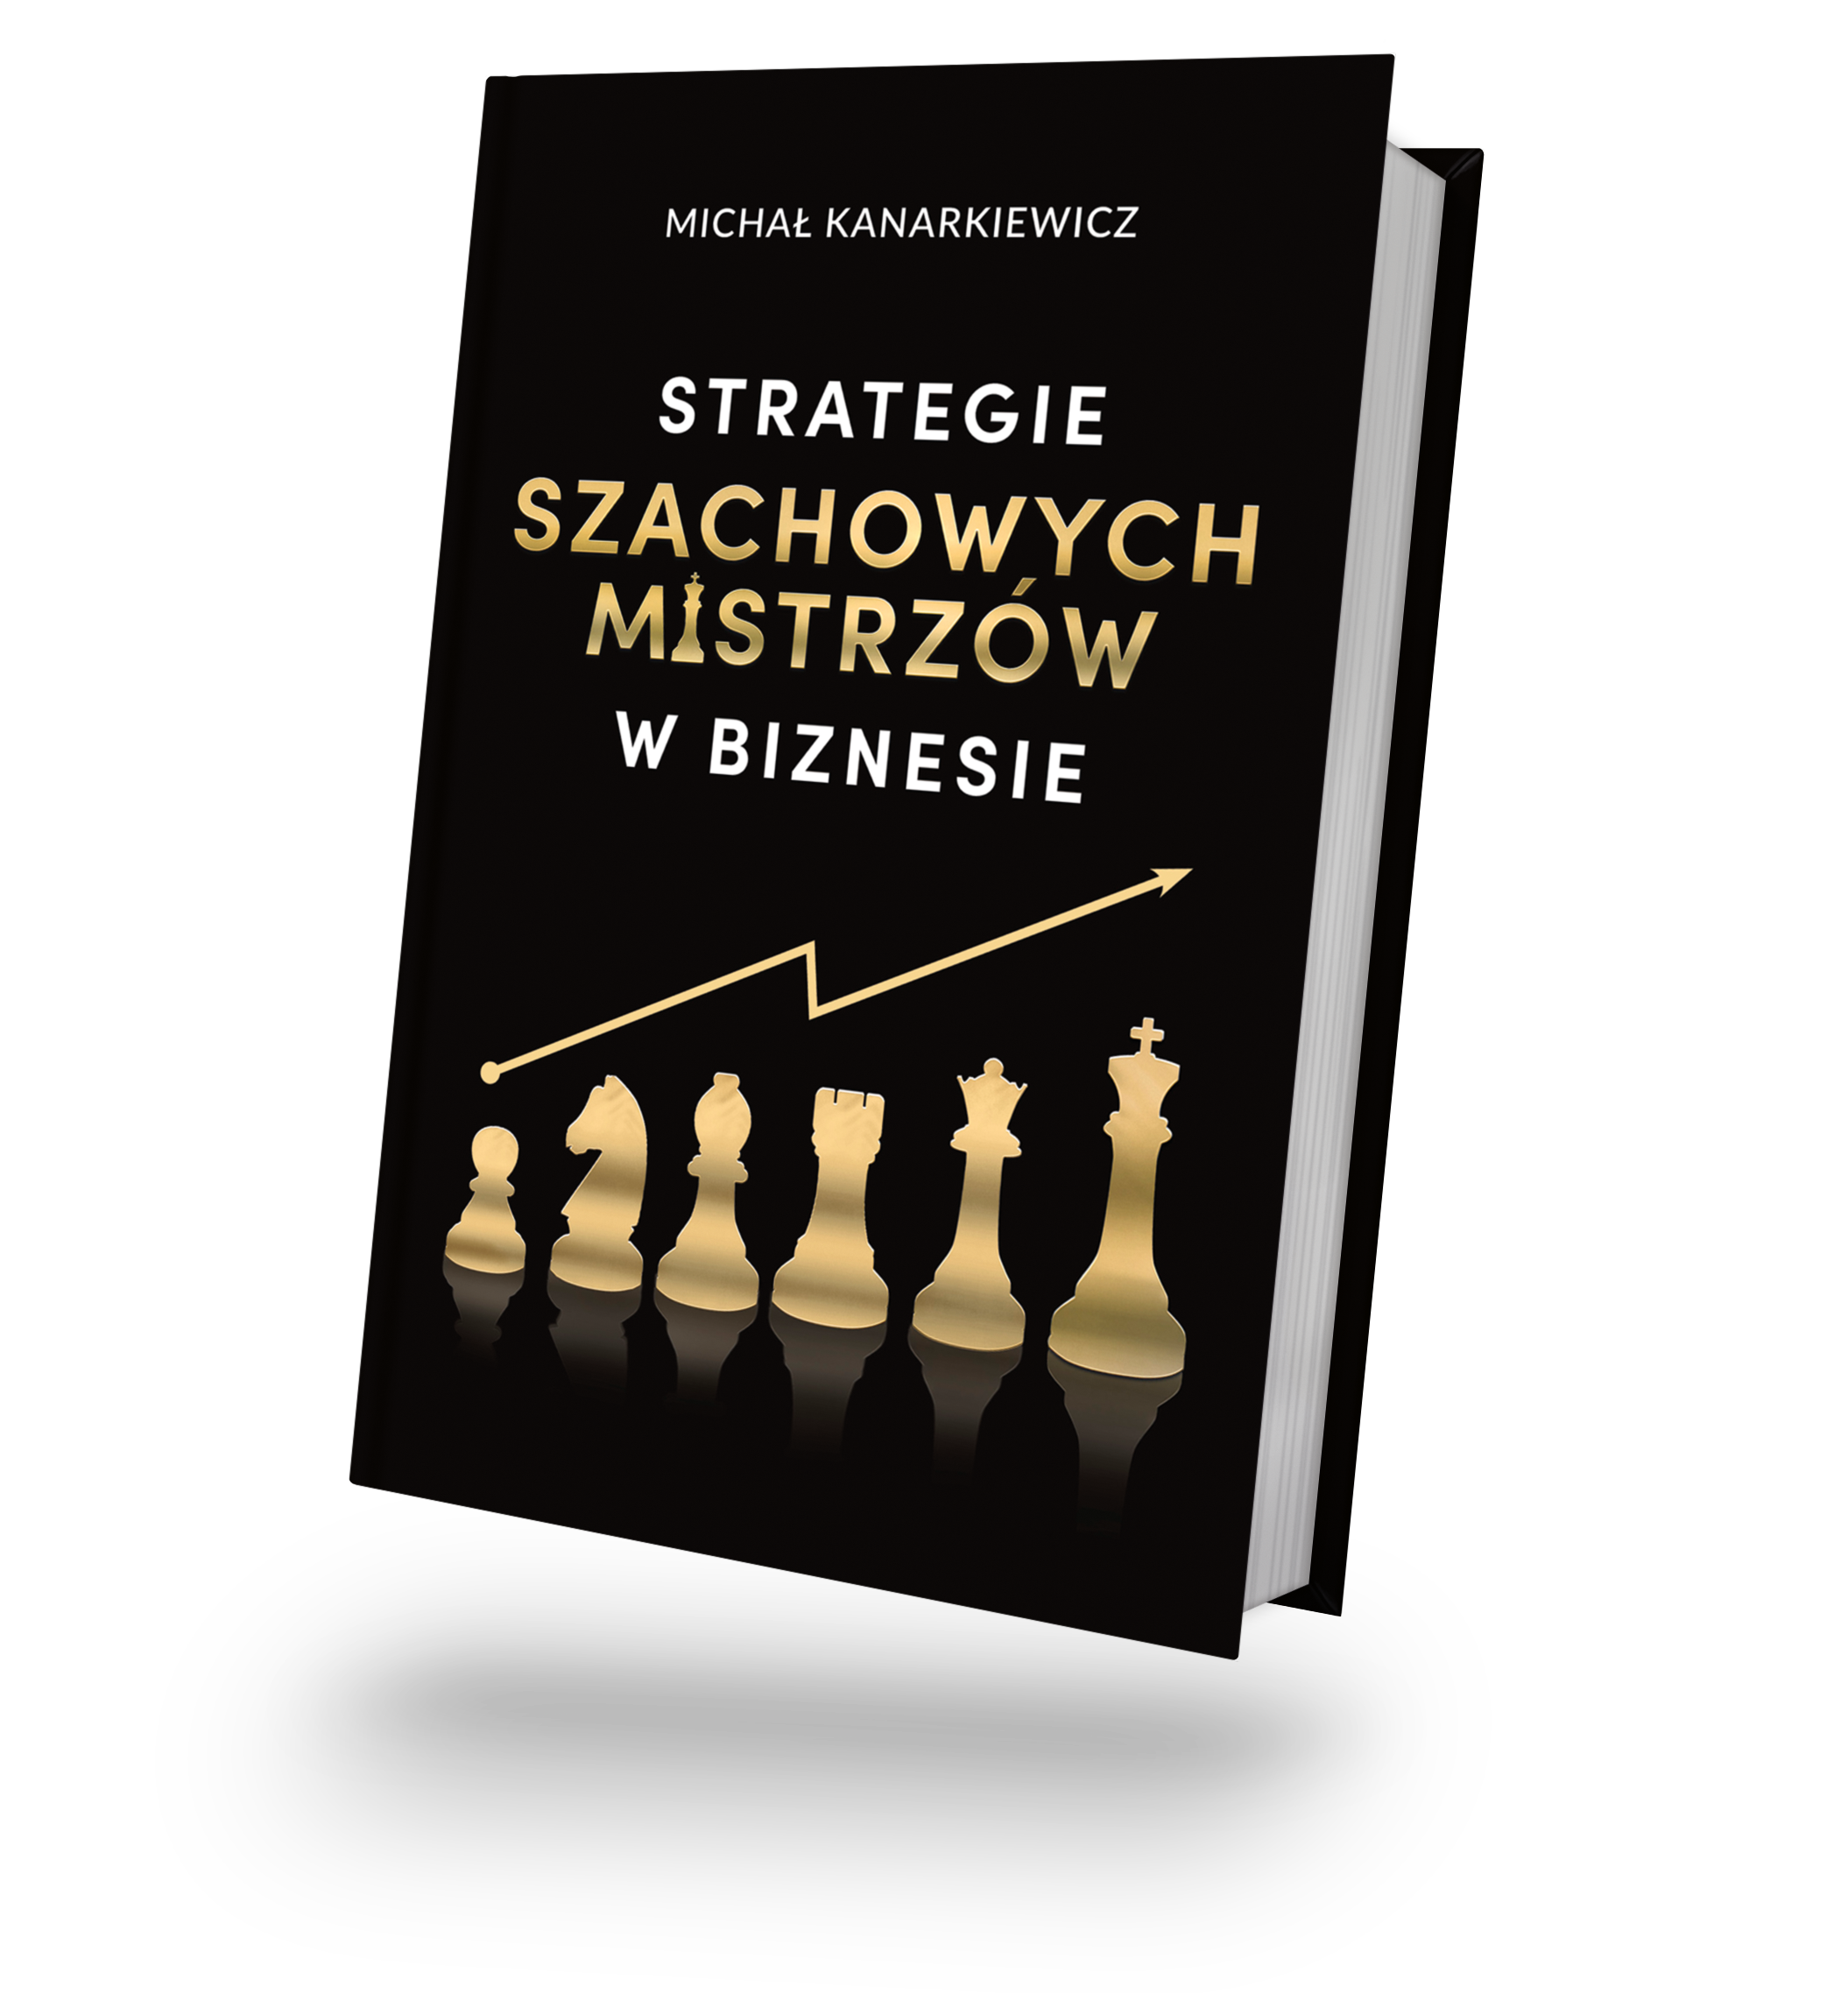 Okładka drugiego wydania książki Strategie szachowych mistrzów w biznesie